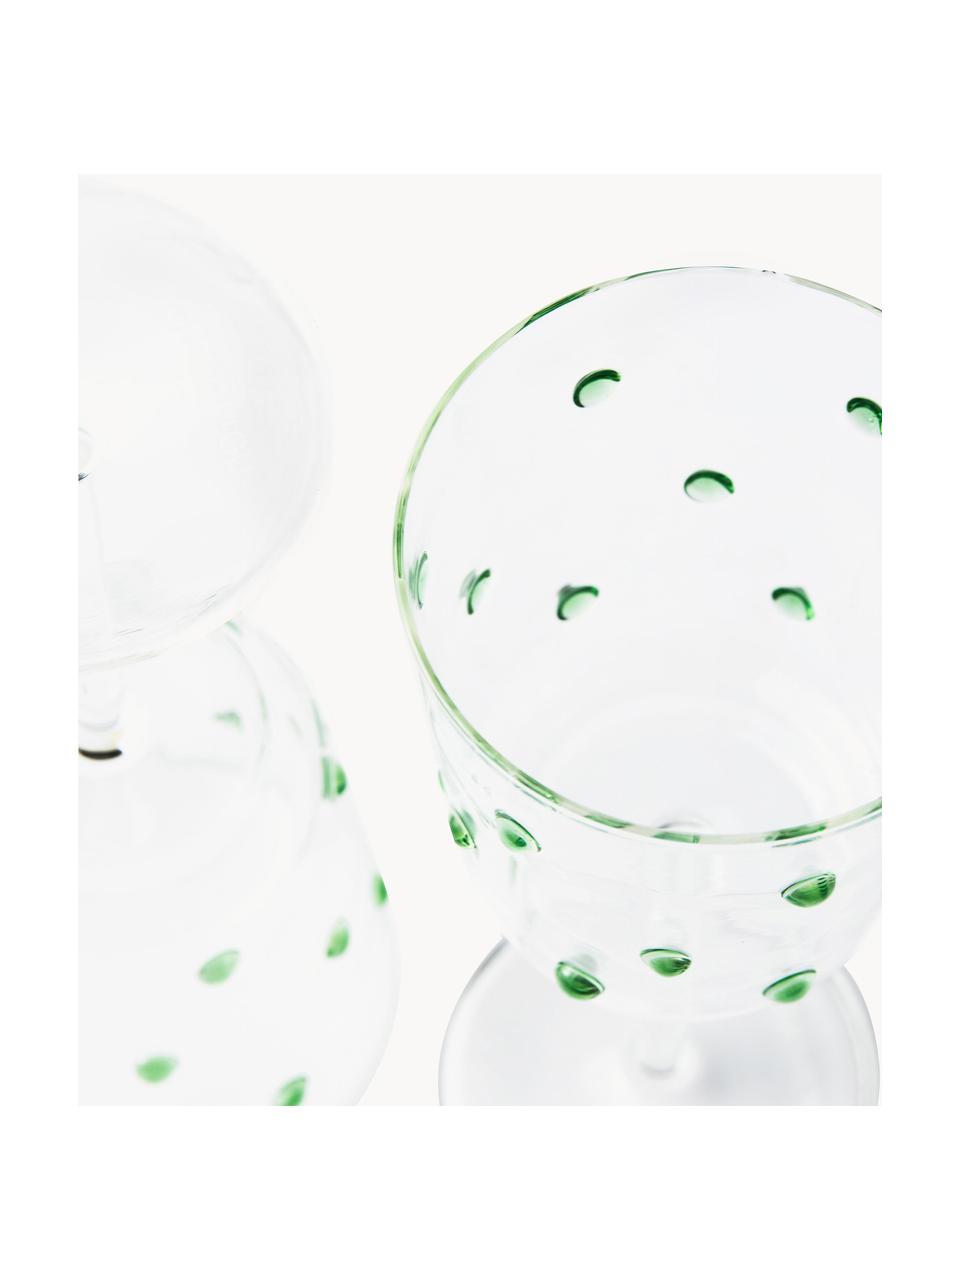 Mondgeblazen wijnglazen Nob van borosilicaatglas, 2 stuks, Borosilicaatglas, mondgeblazen, Transparant, groen, Ø 9 x H 20 cm, 350 ml